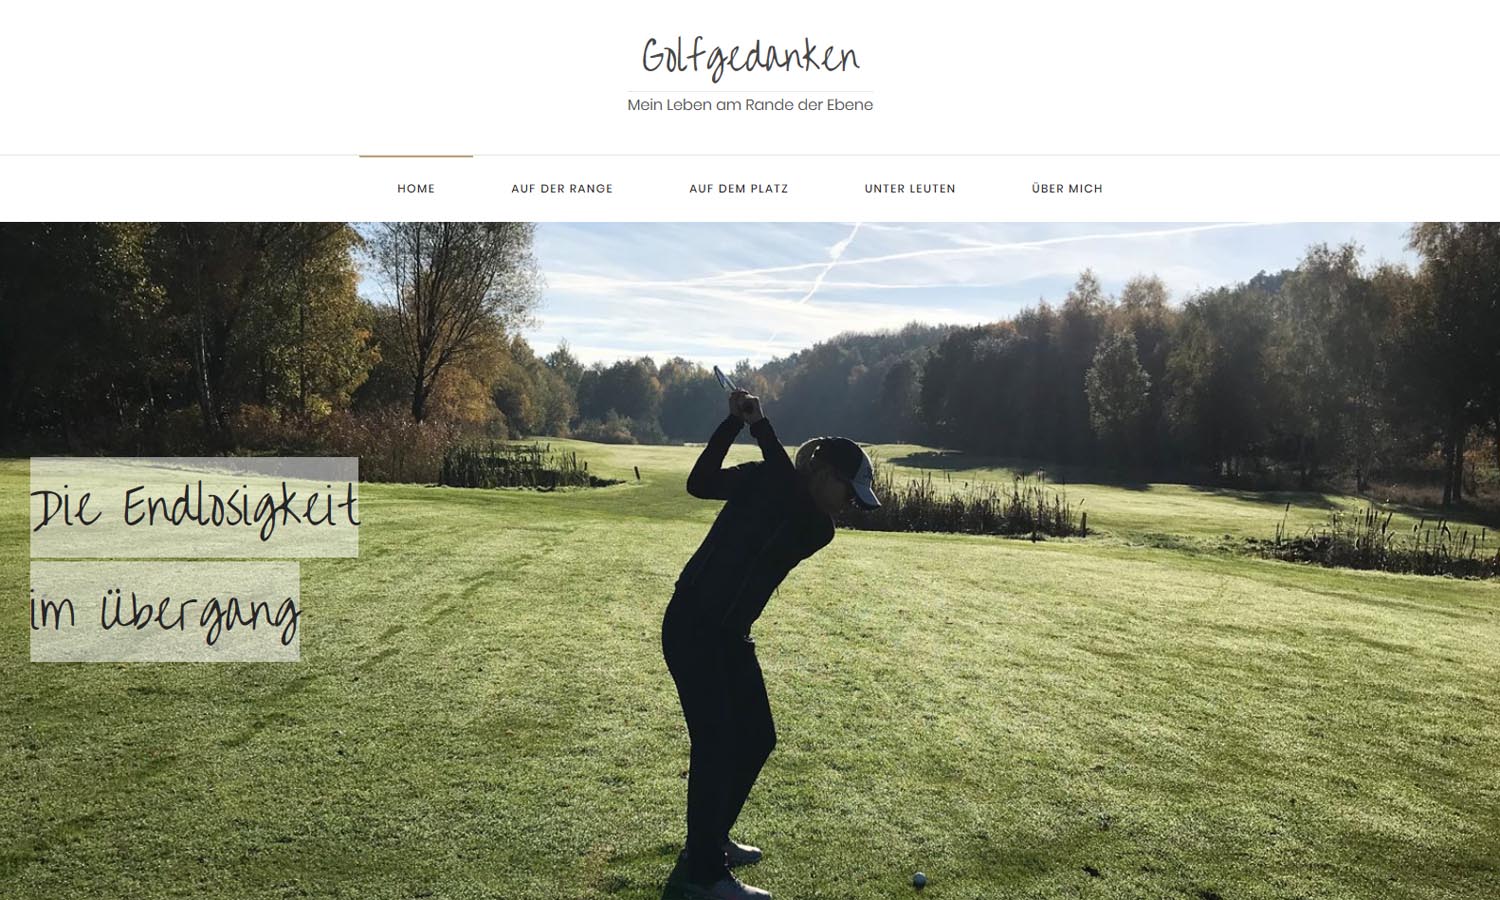 Webseiten Golfgedanken